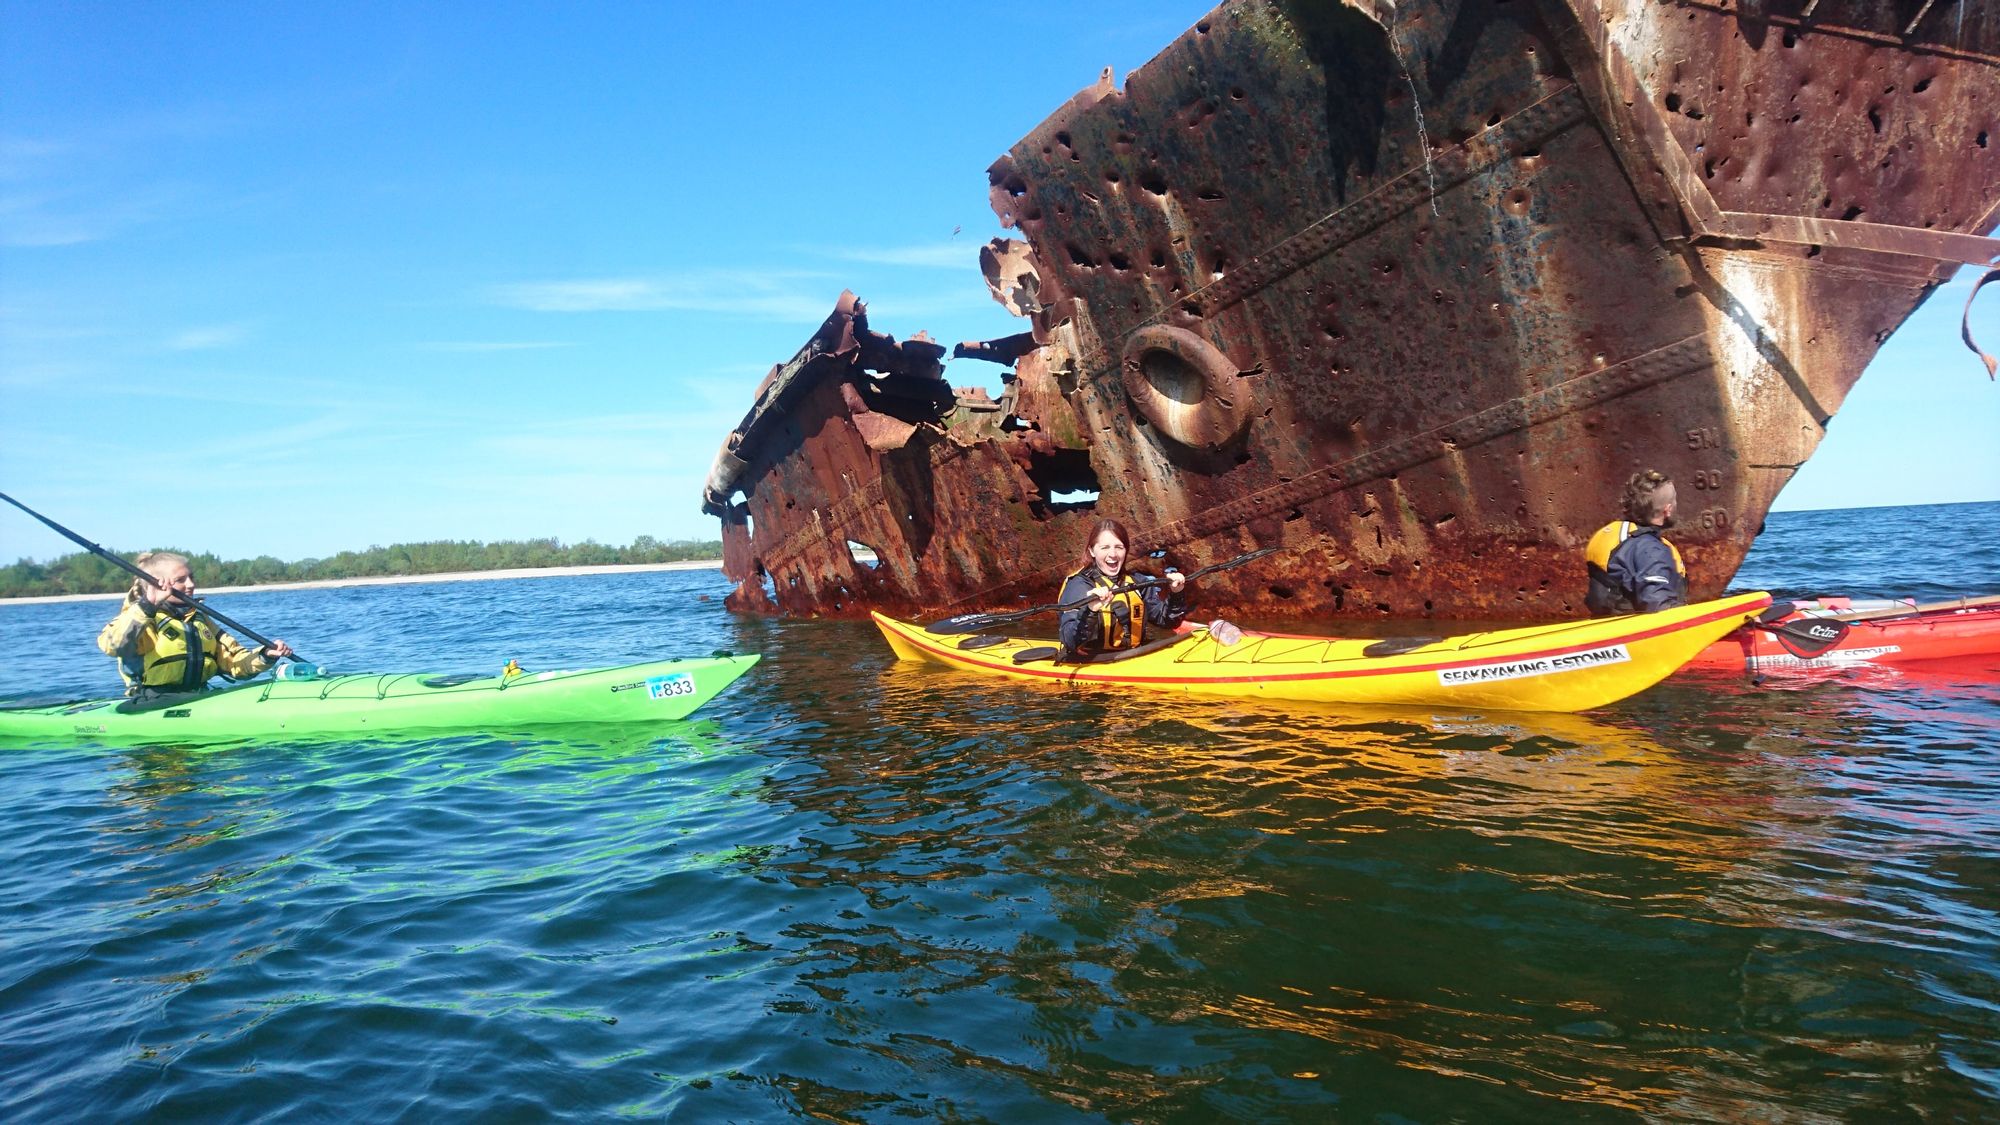 Kayaking-to-shipwreck-Estonia